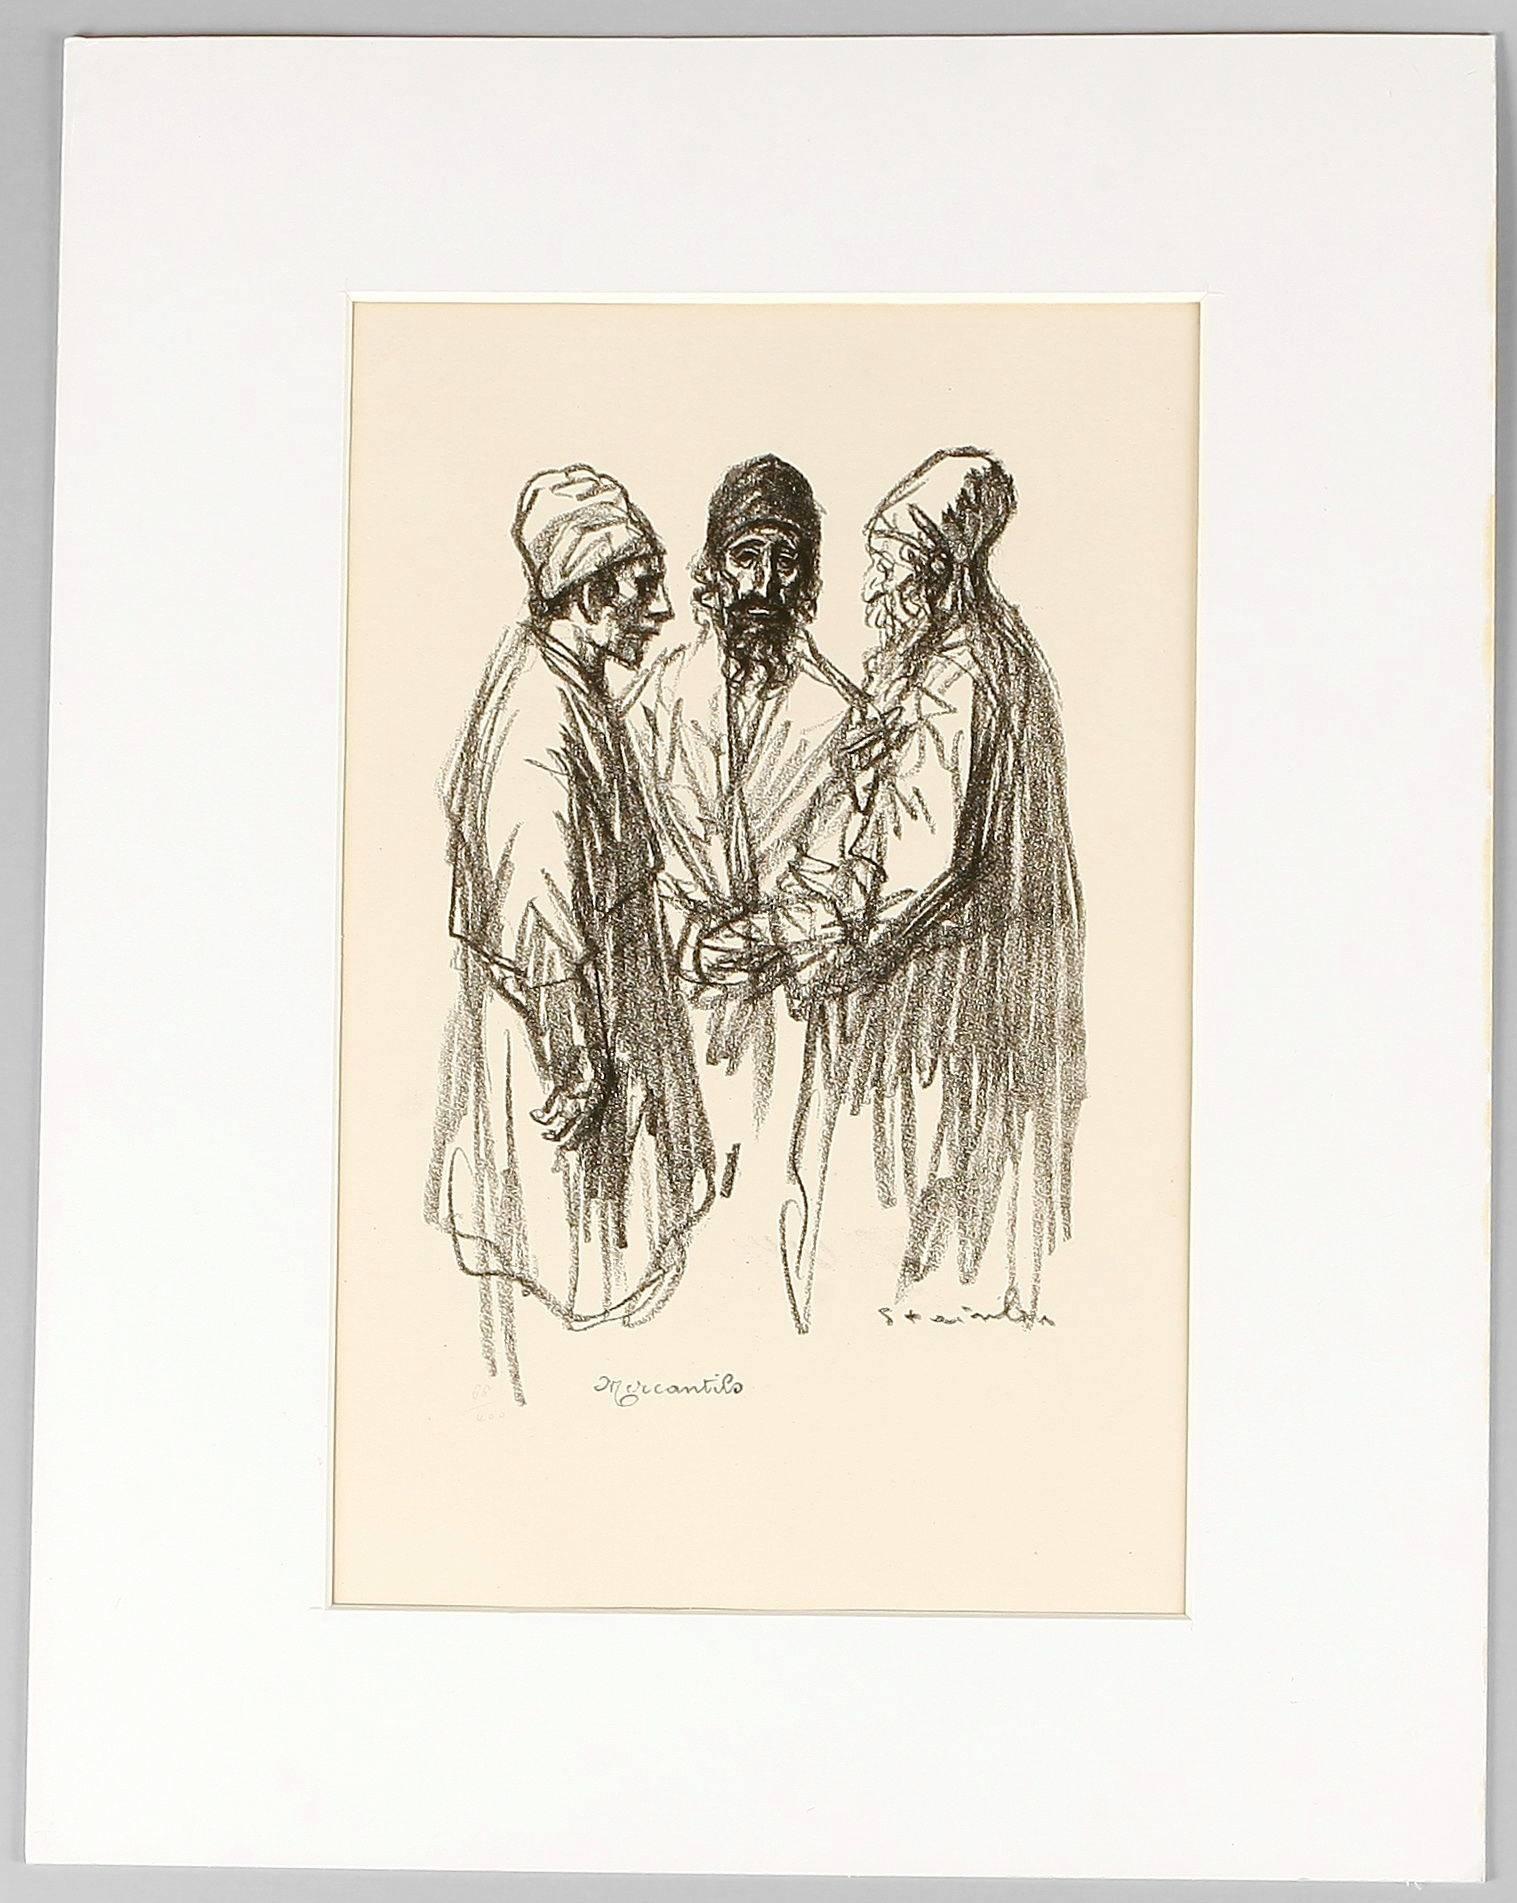 Les Marchands - The Dealers - Mercantilo - Print by Théophile Alexandre Steinlen